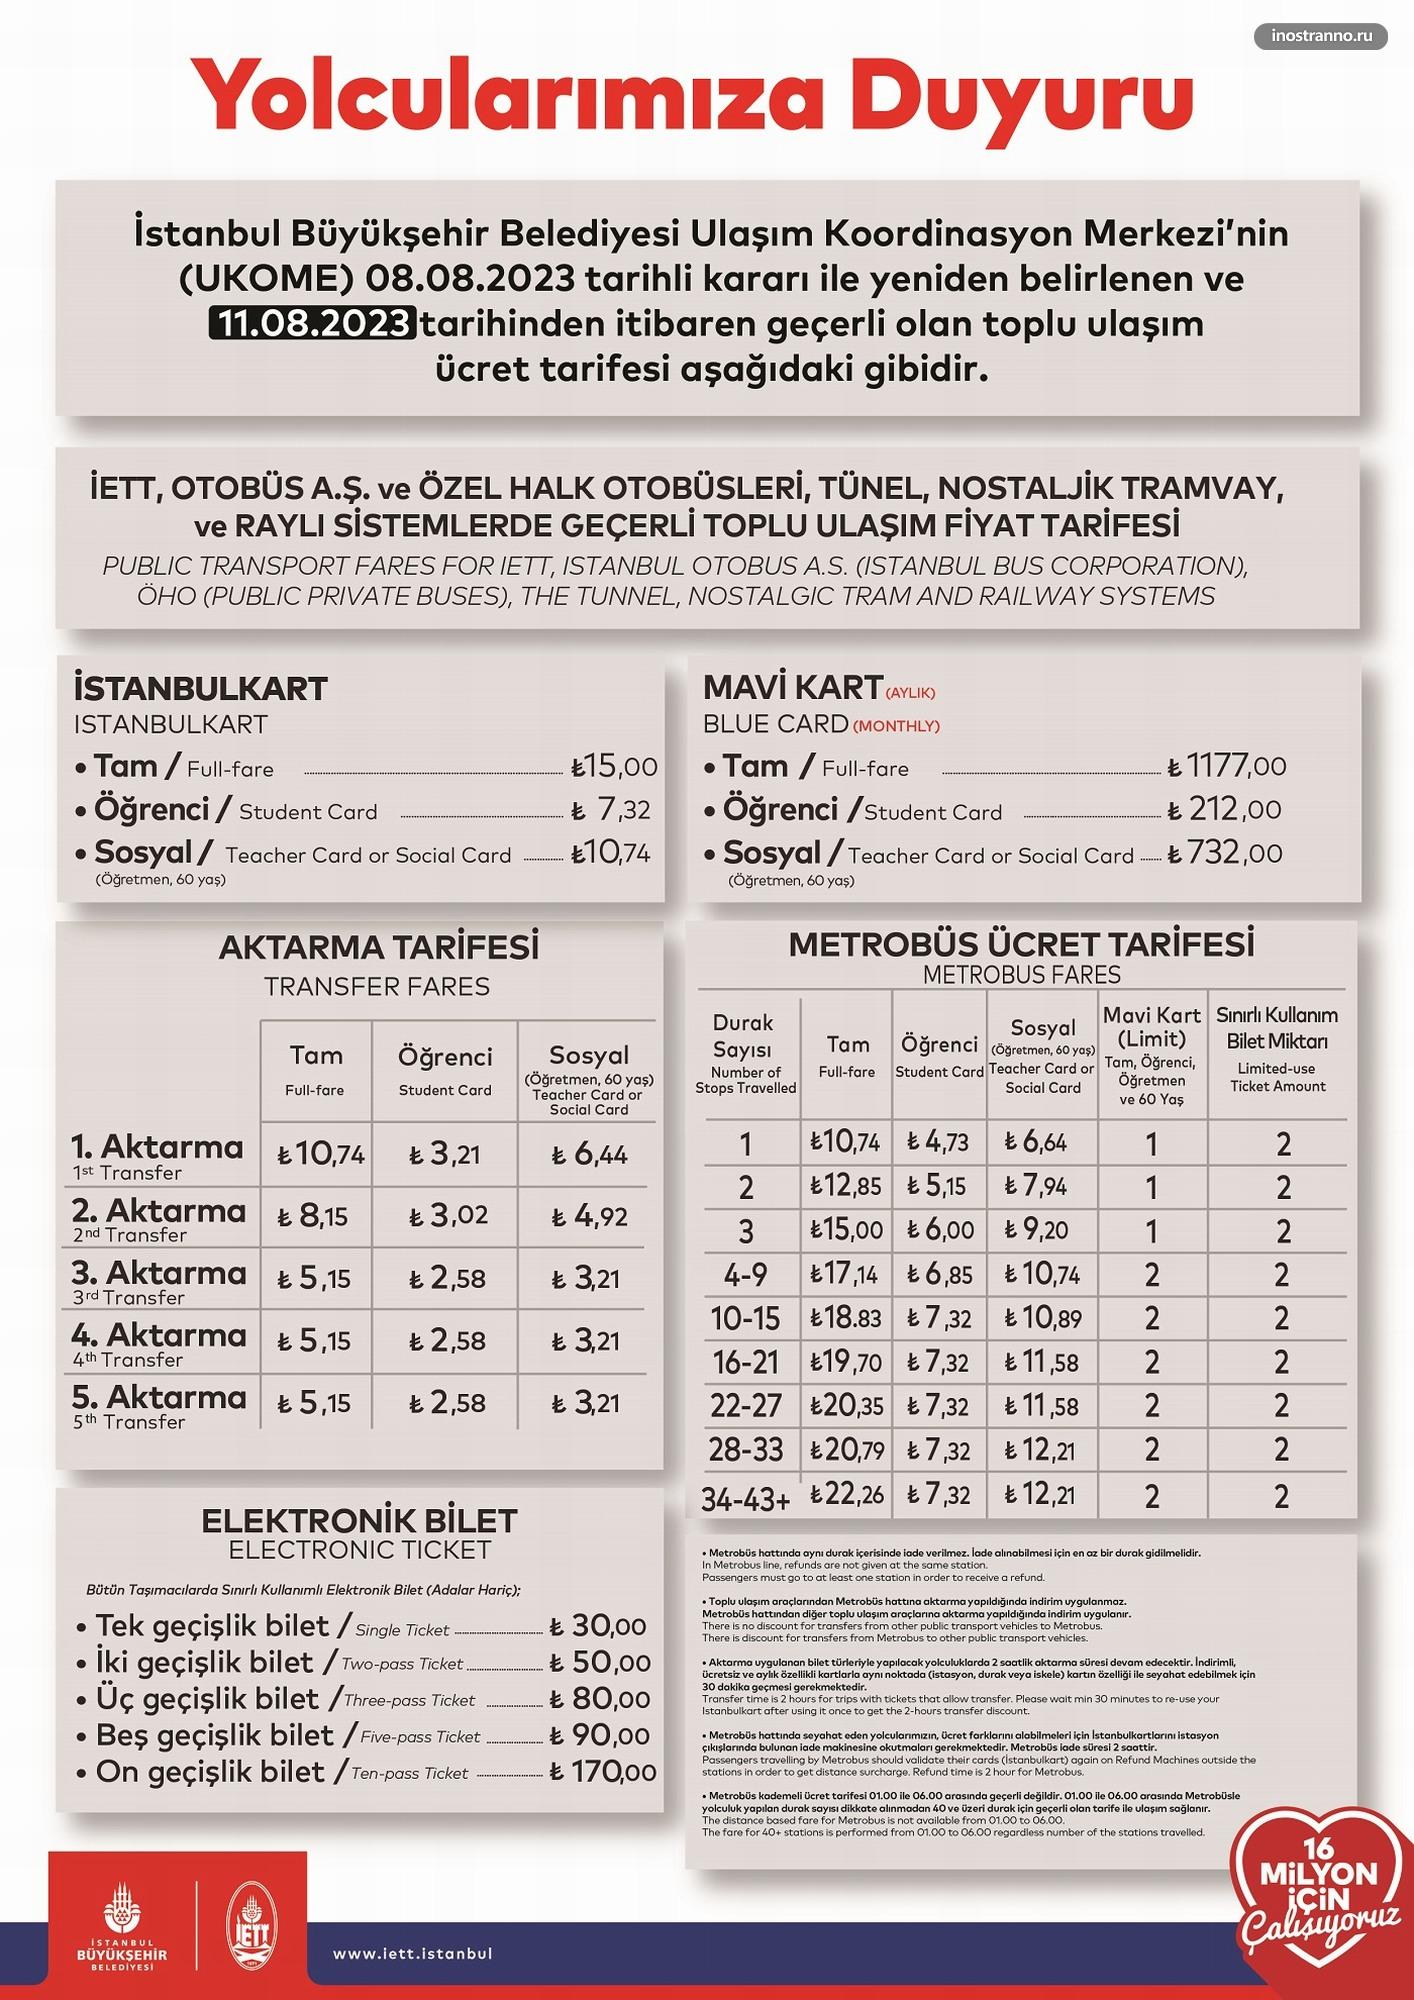 Цены и стоимость проезда в Стамбула в транспорте и метро 2023 по Истанбулкарте